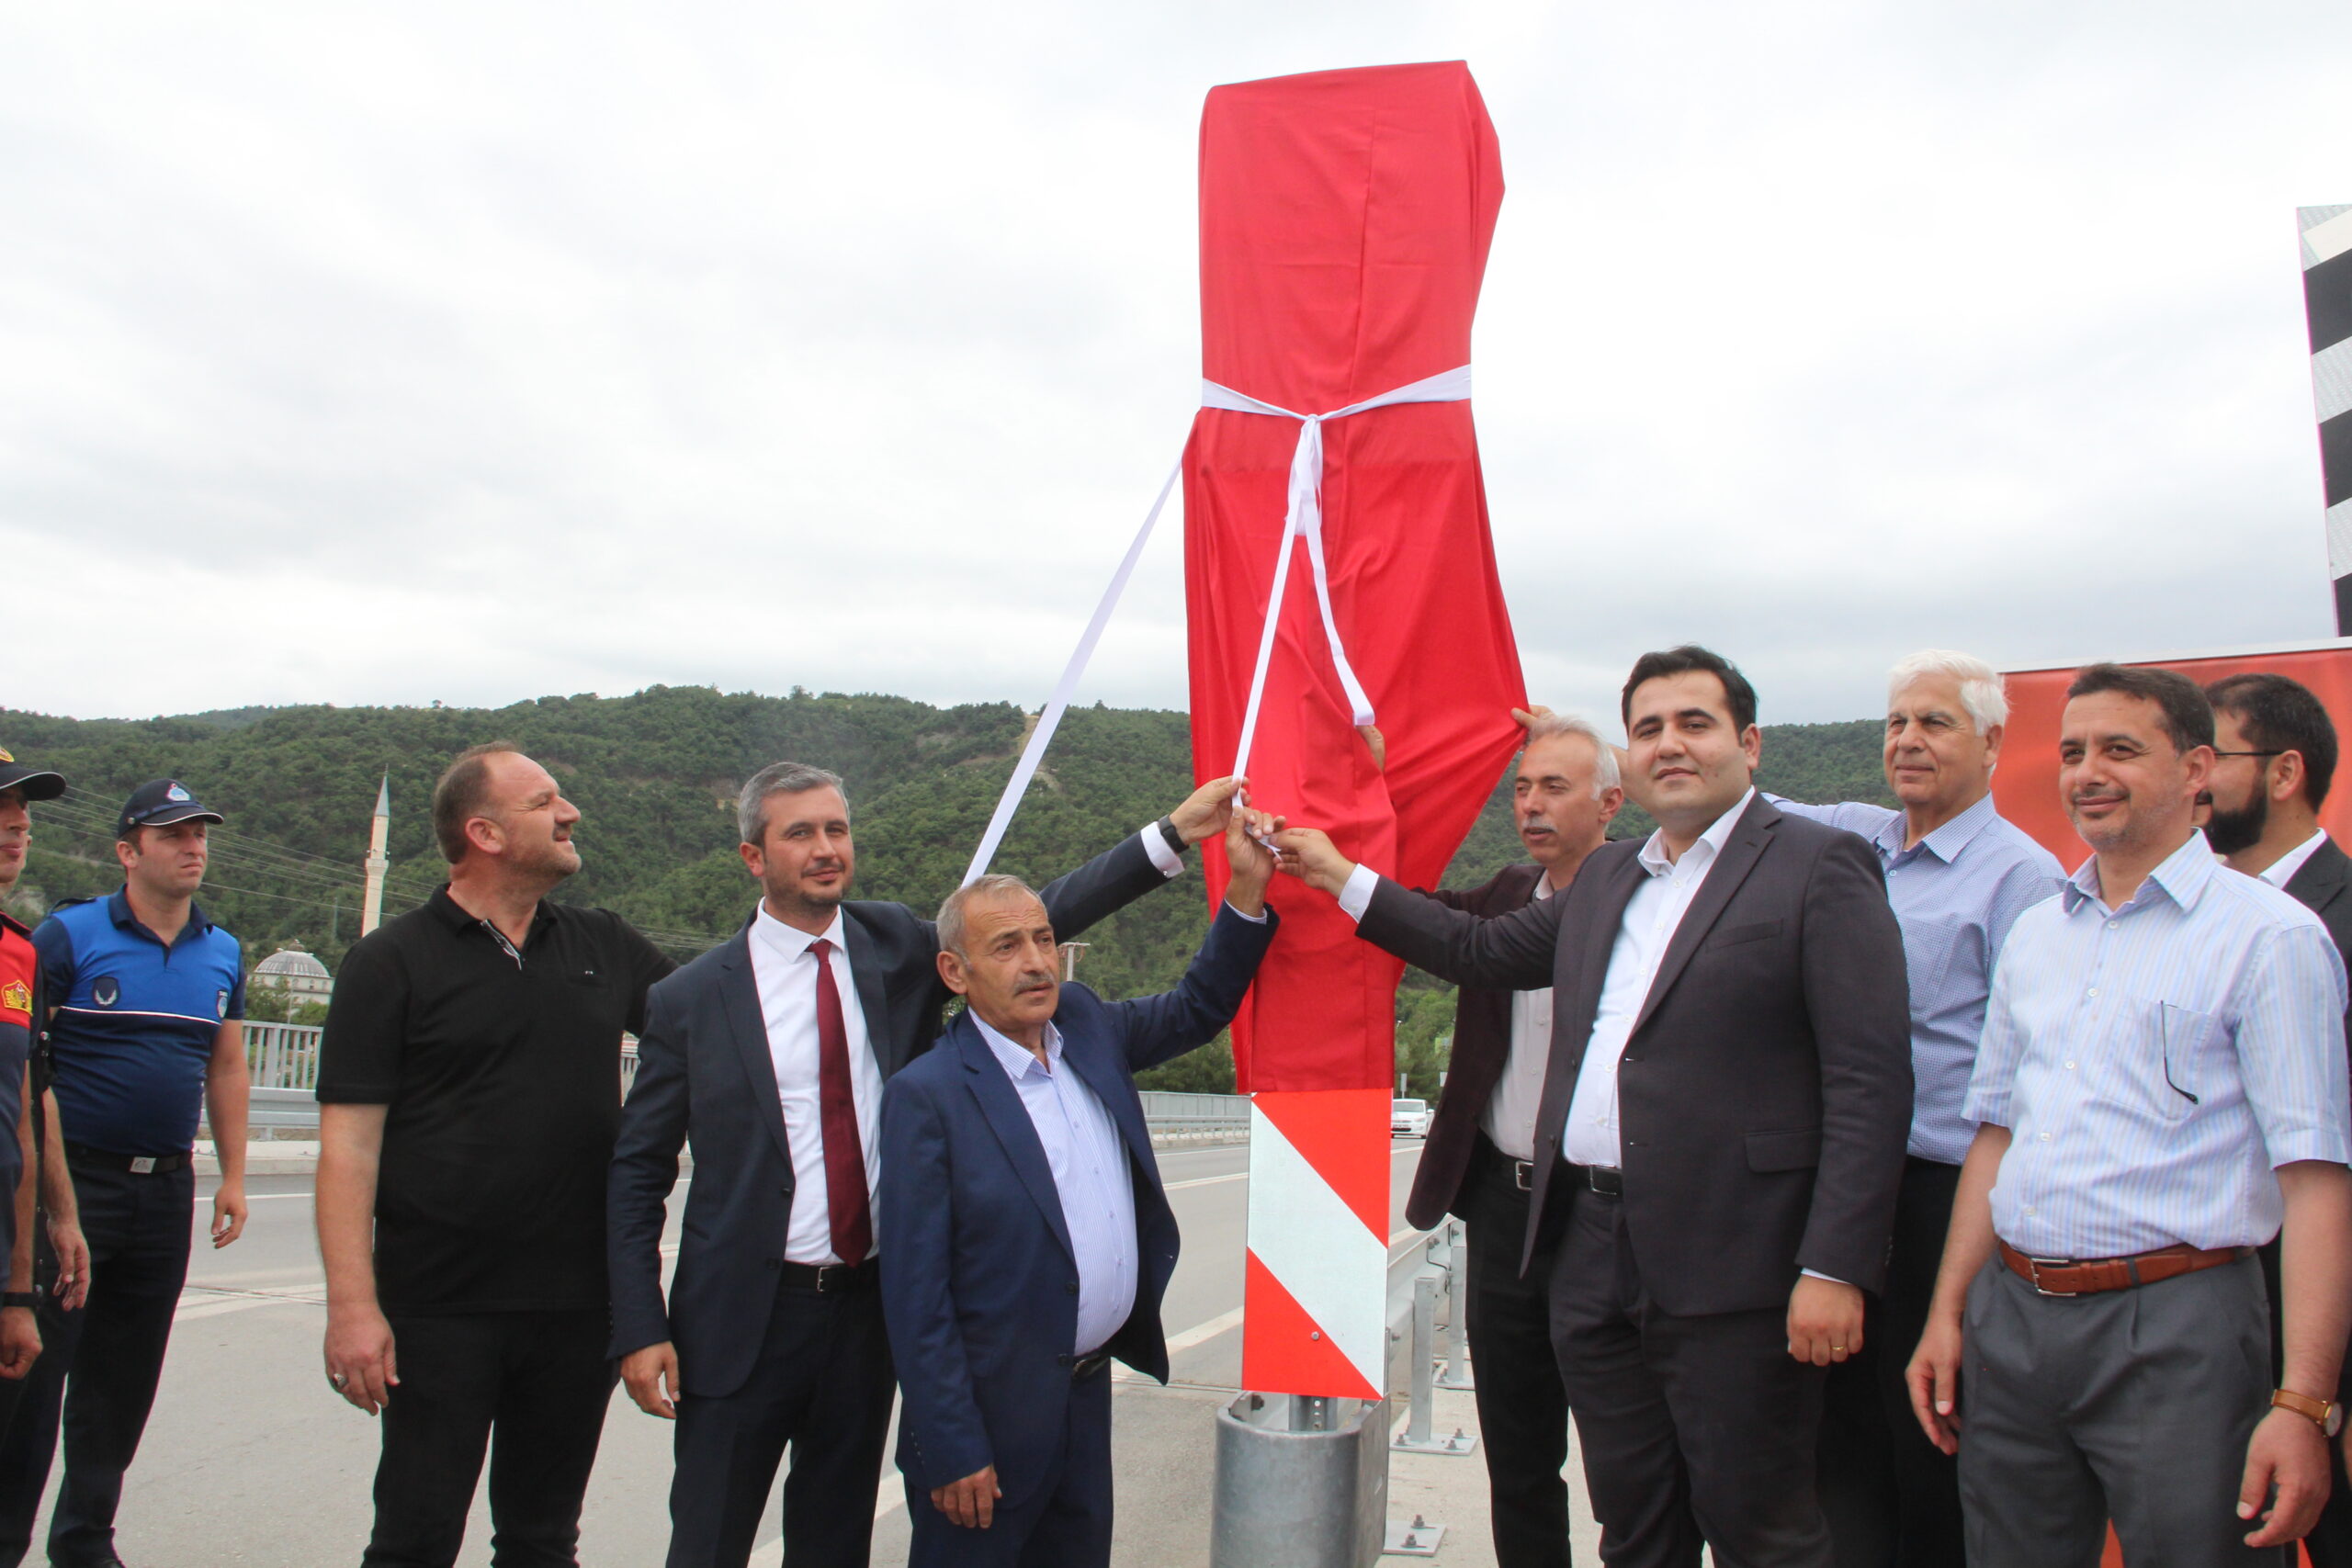 Taşova’da yeni açılan köprüye “15 Temmuz Şehitler Köprüsü” ismi verildi